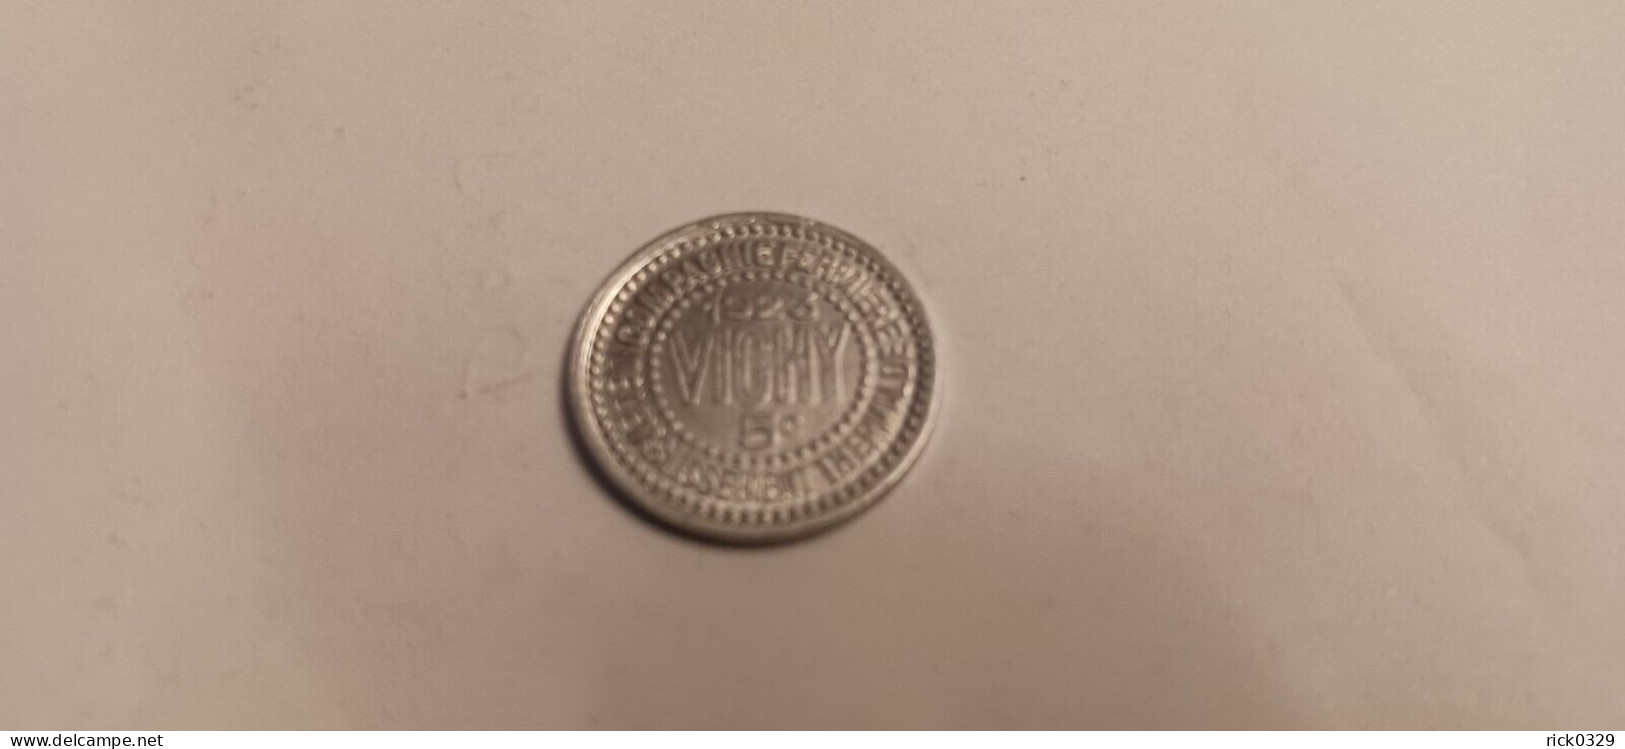 5 Centimes Vichy 1923 - Monedas / De Necesidad